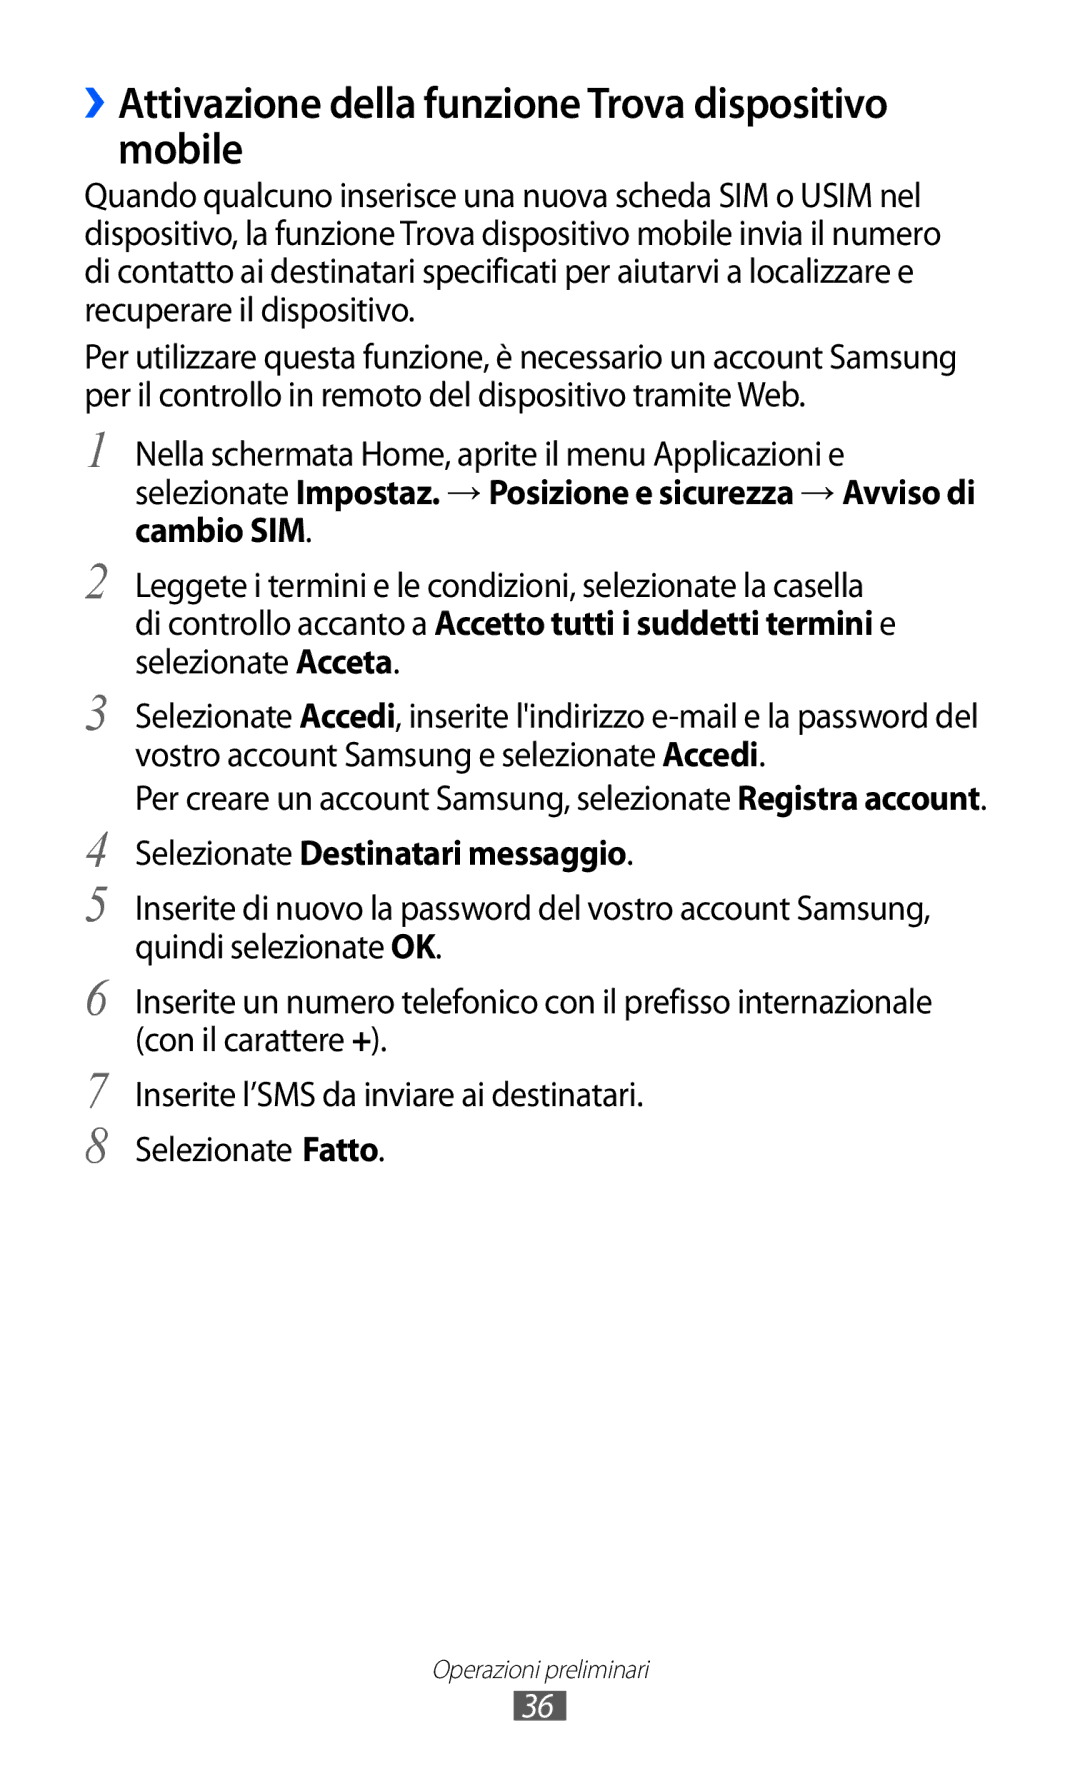 Samsung GT-B5510WSAWIN manual ››Attivazione della funzione Trova dispositivo mobile, Selezionate Destinatari messaggio 